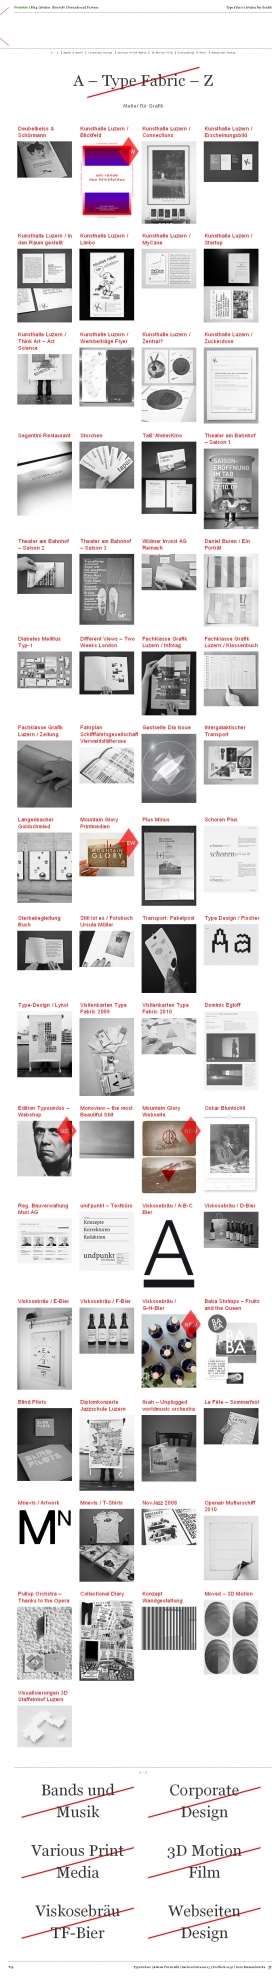 瑞士typefabric平面设计-主要涉及企业形象设计，书籍装帧设计，排版，CMS的网站，海报设计，网页设计，字体设计，宣传册设计，包装设计，动态图形，3D，摄影，网站布局，宣传册杂志设计，品牌推广，企业识别。